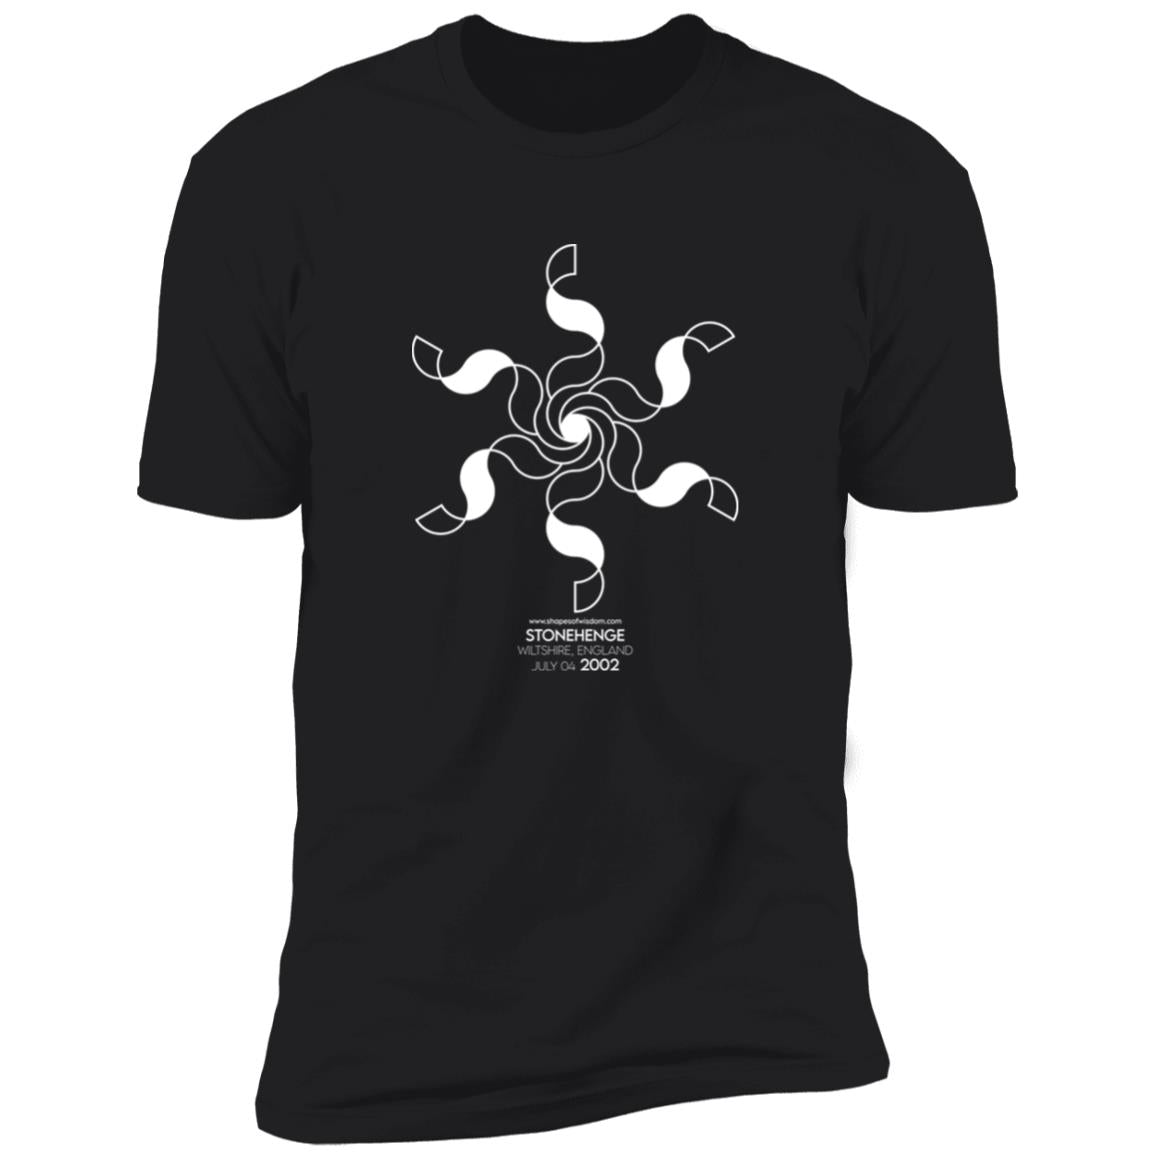 Crop Circle Premium T-Shirt - Stonehenge 5